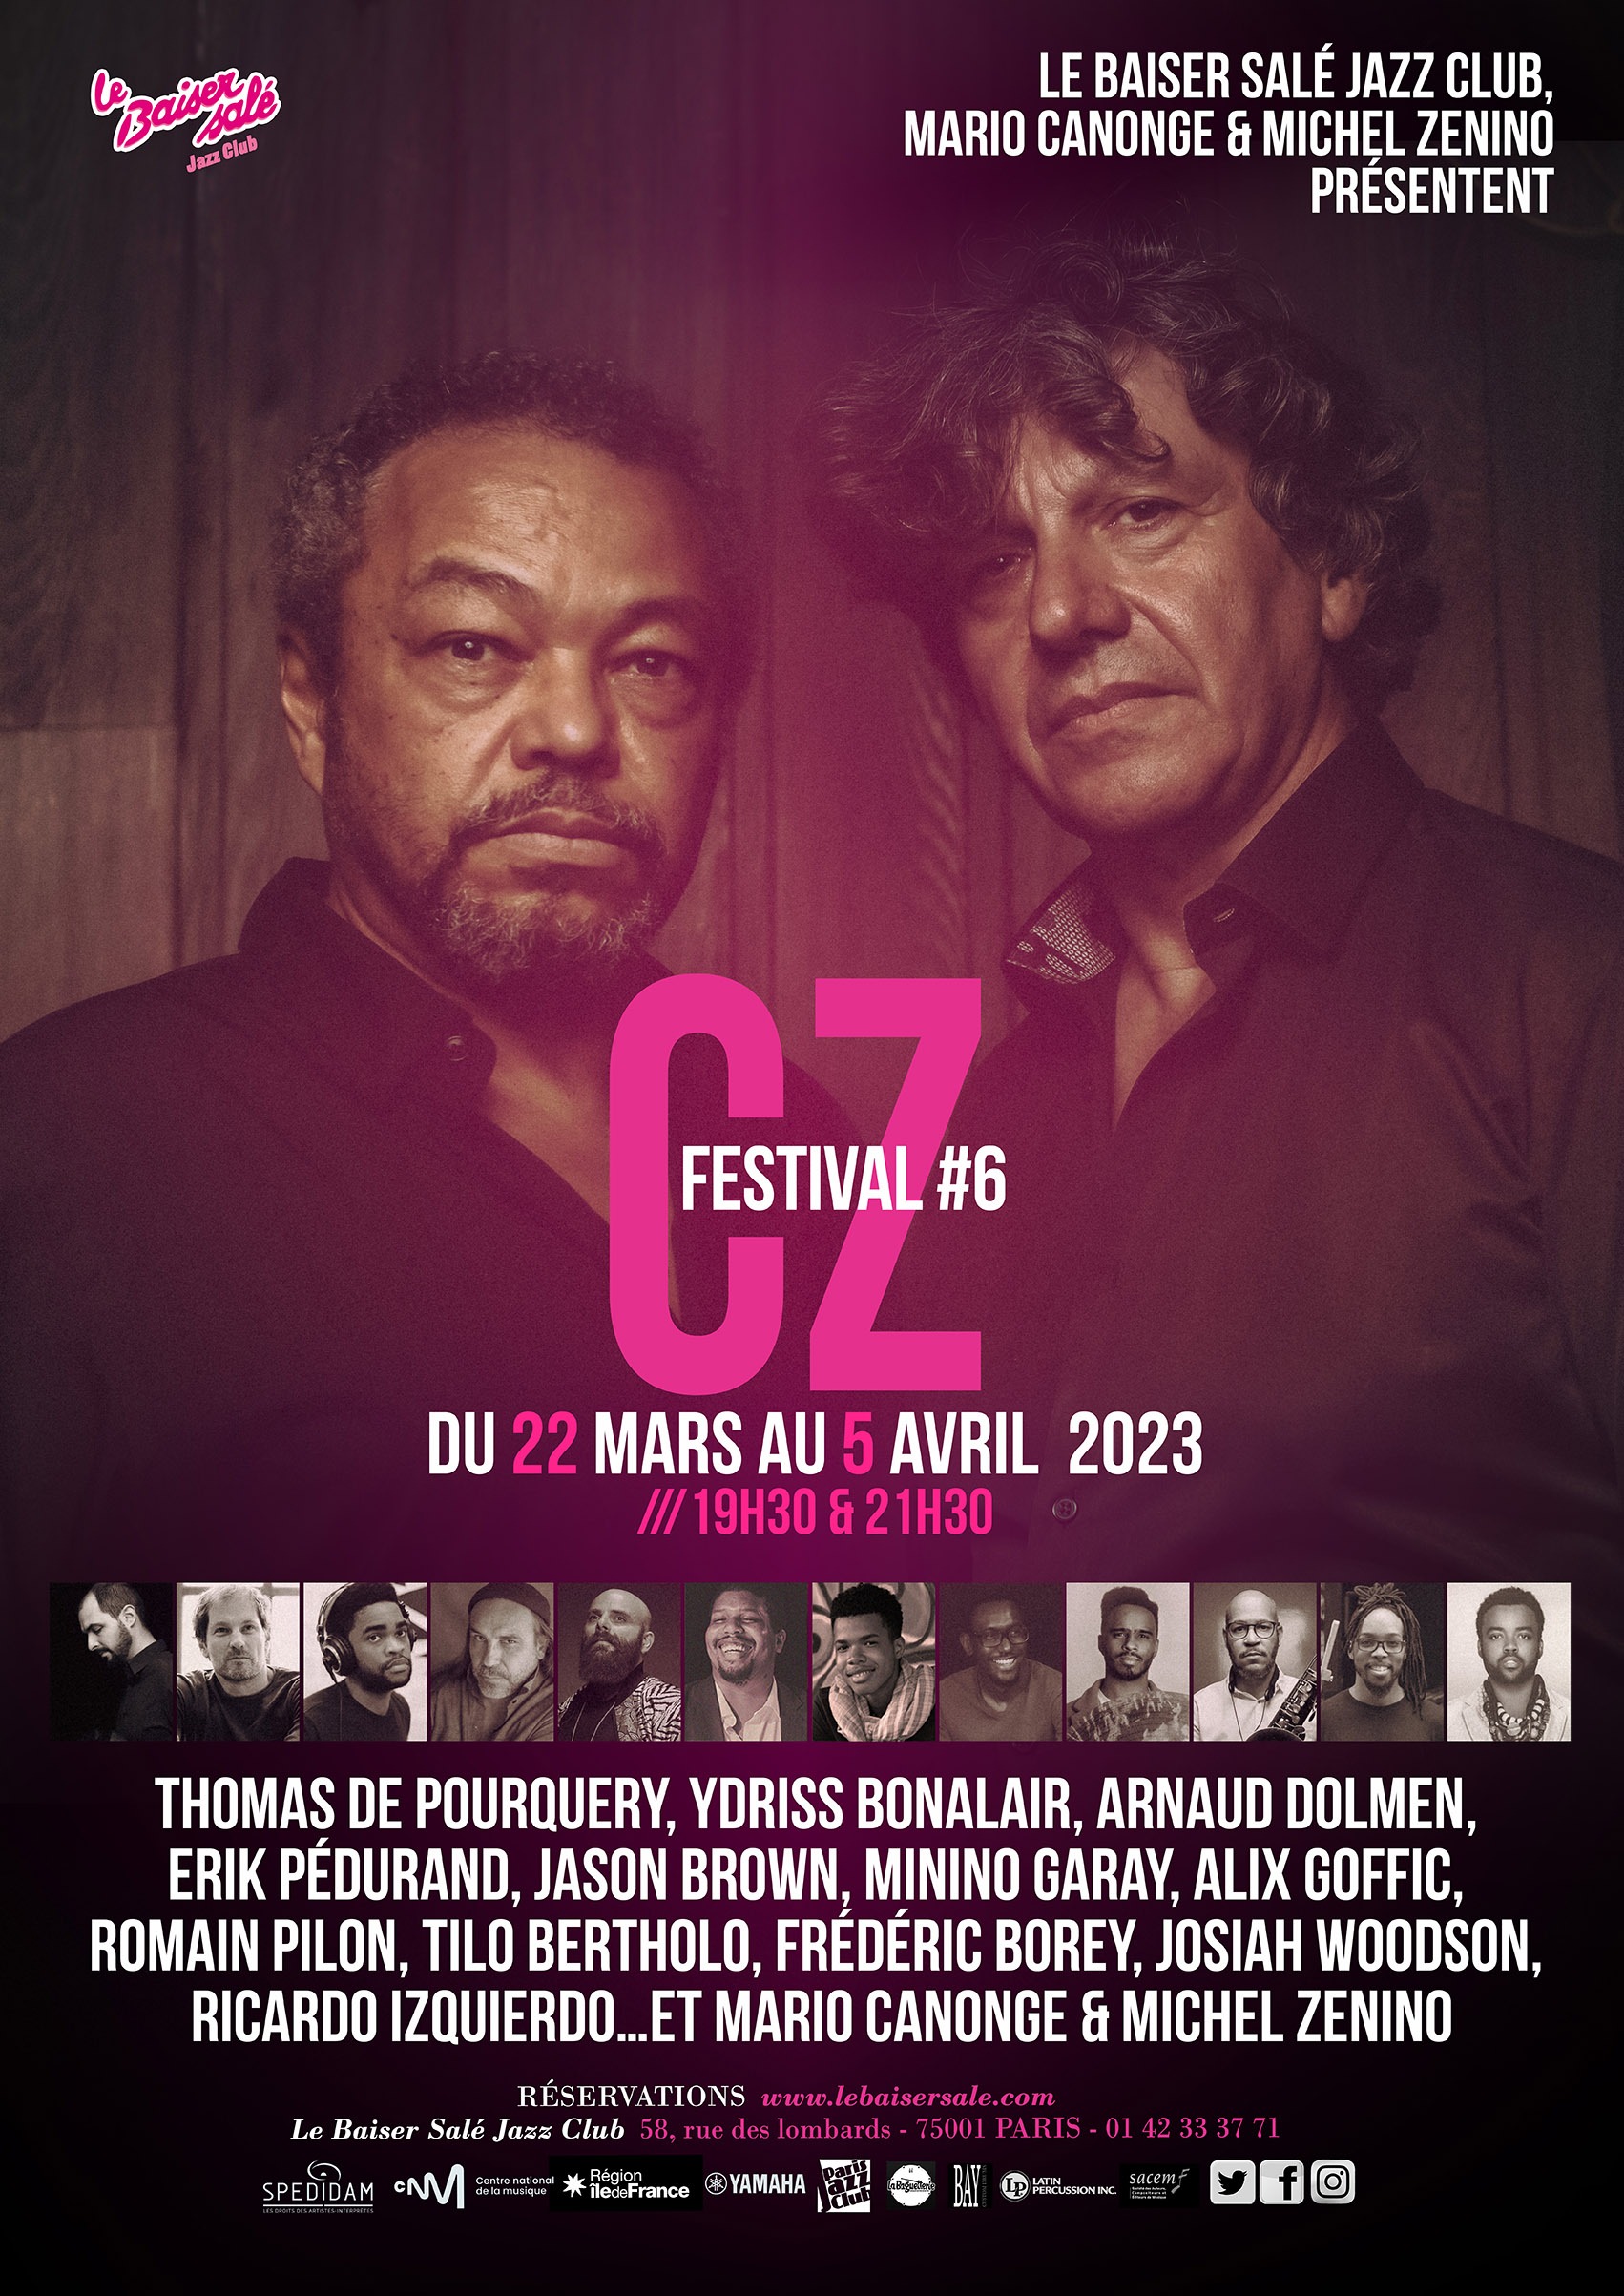 Le Baiser Salé, Mario Canonge & Michel Zenino Présentent Le CZ Festival #6